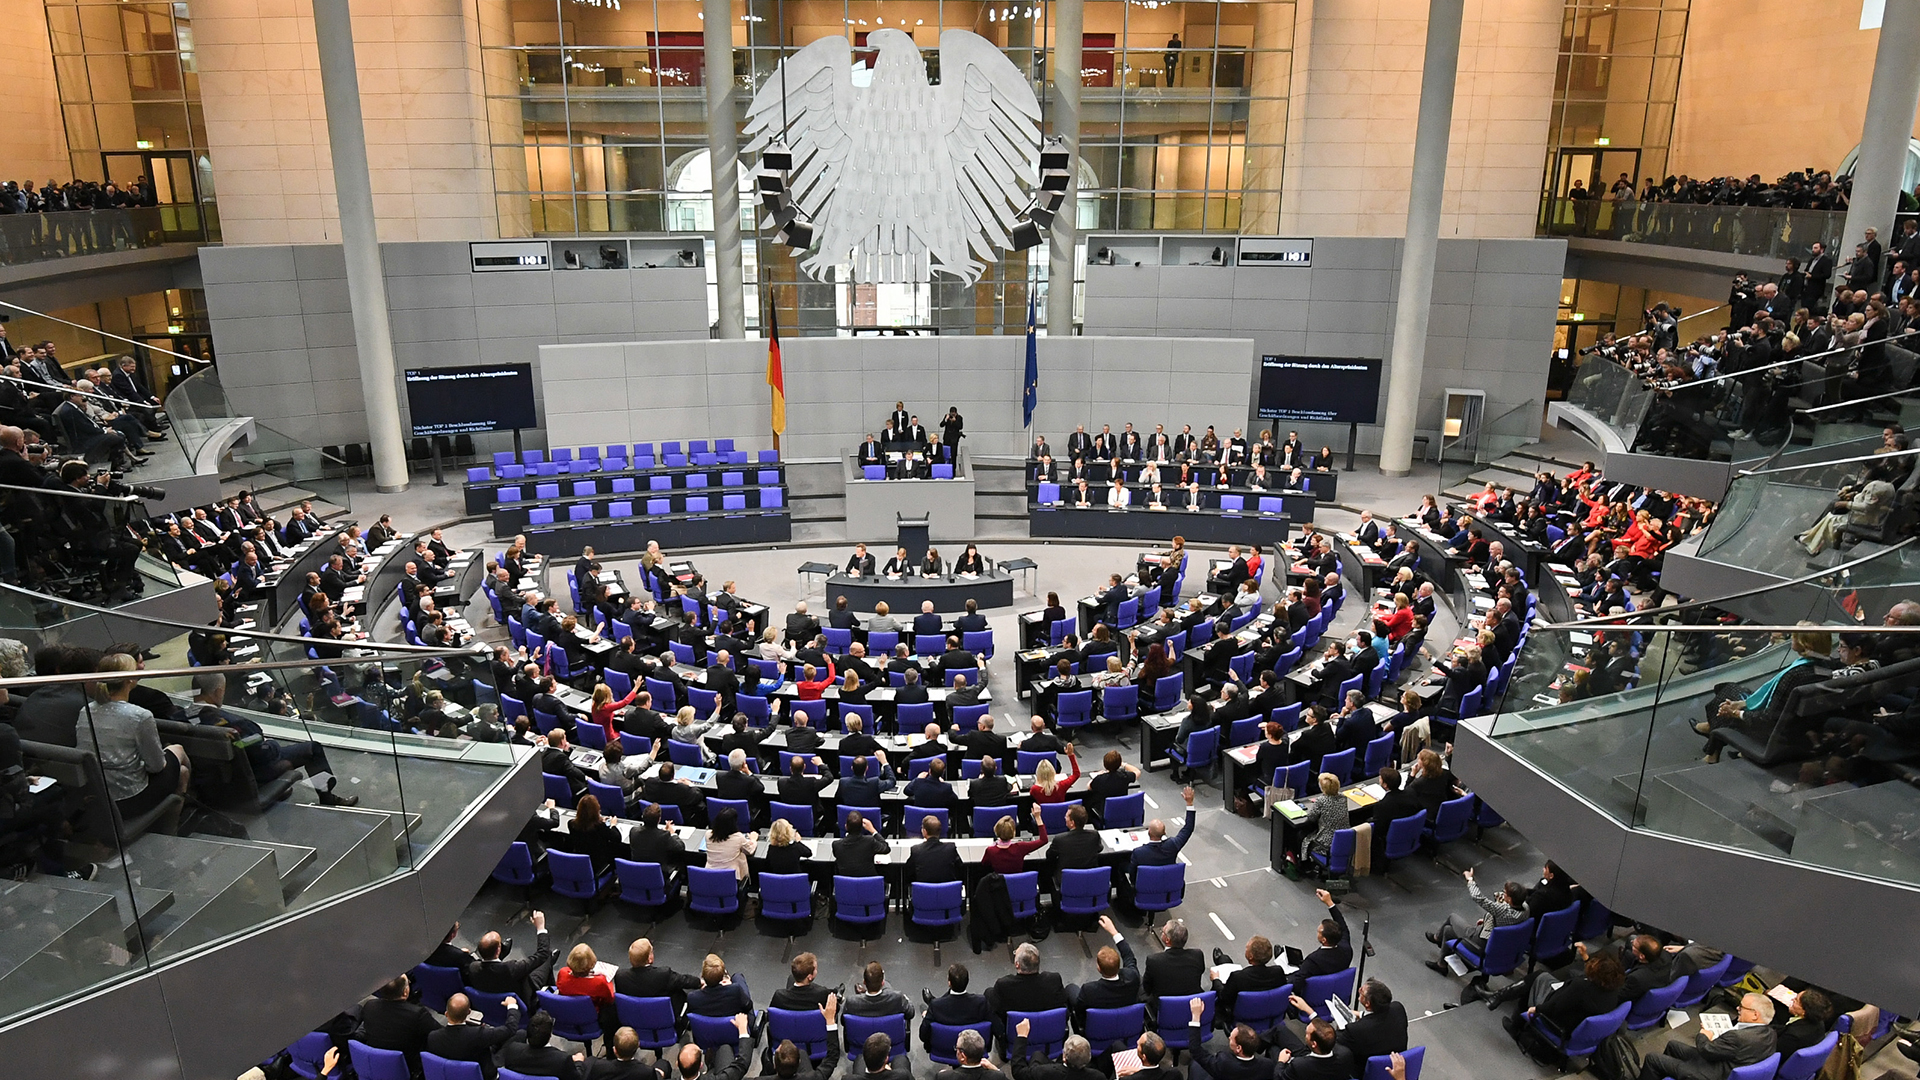 Blick in den Plenarsaal bei der konstituierende Sitzung am 24. Oktober 2017 | picture alliance / Ralf Hirschbe